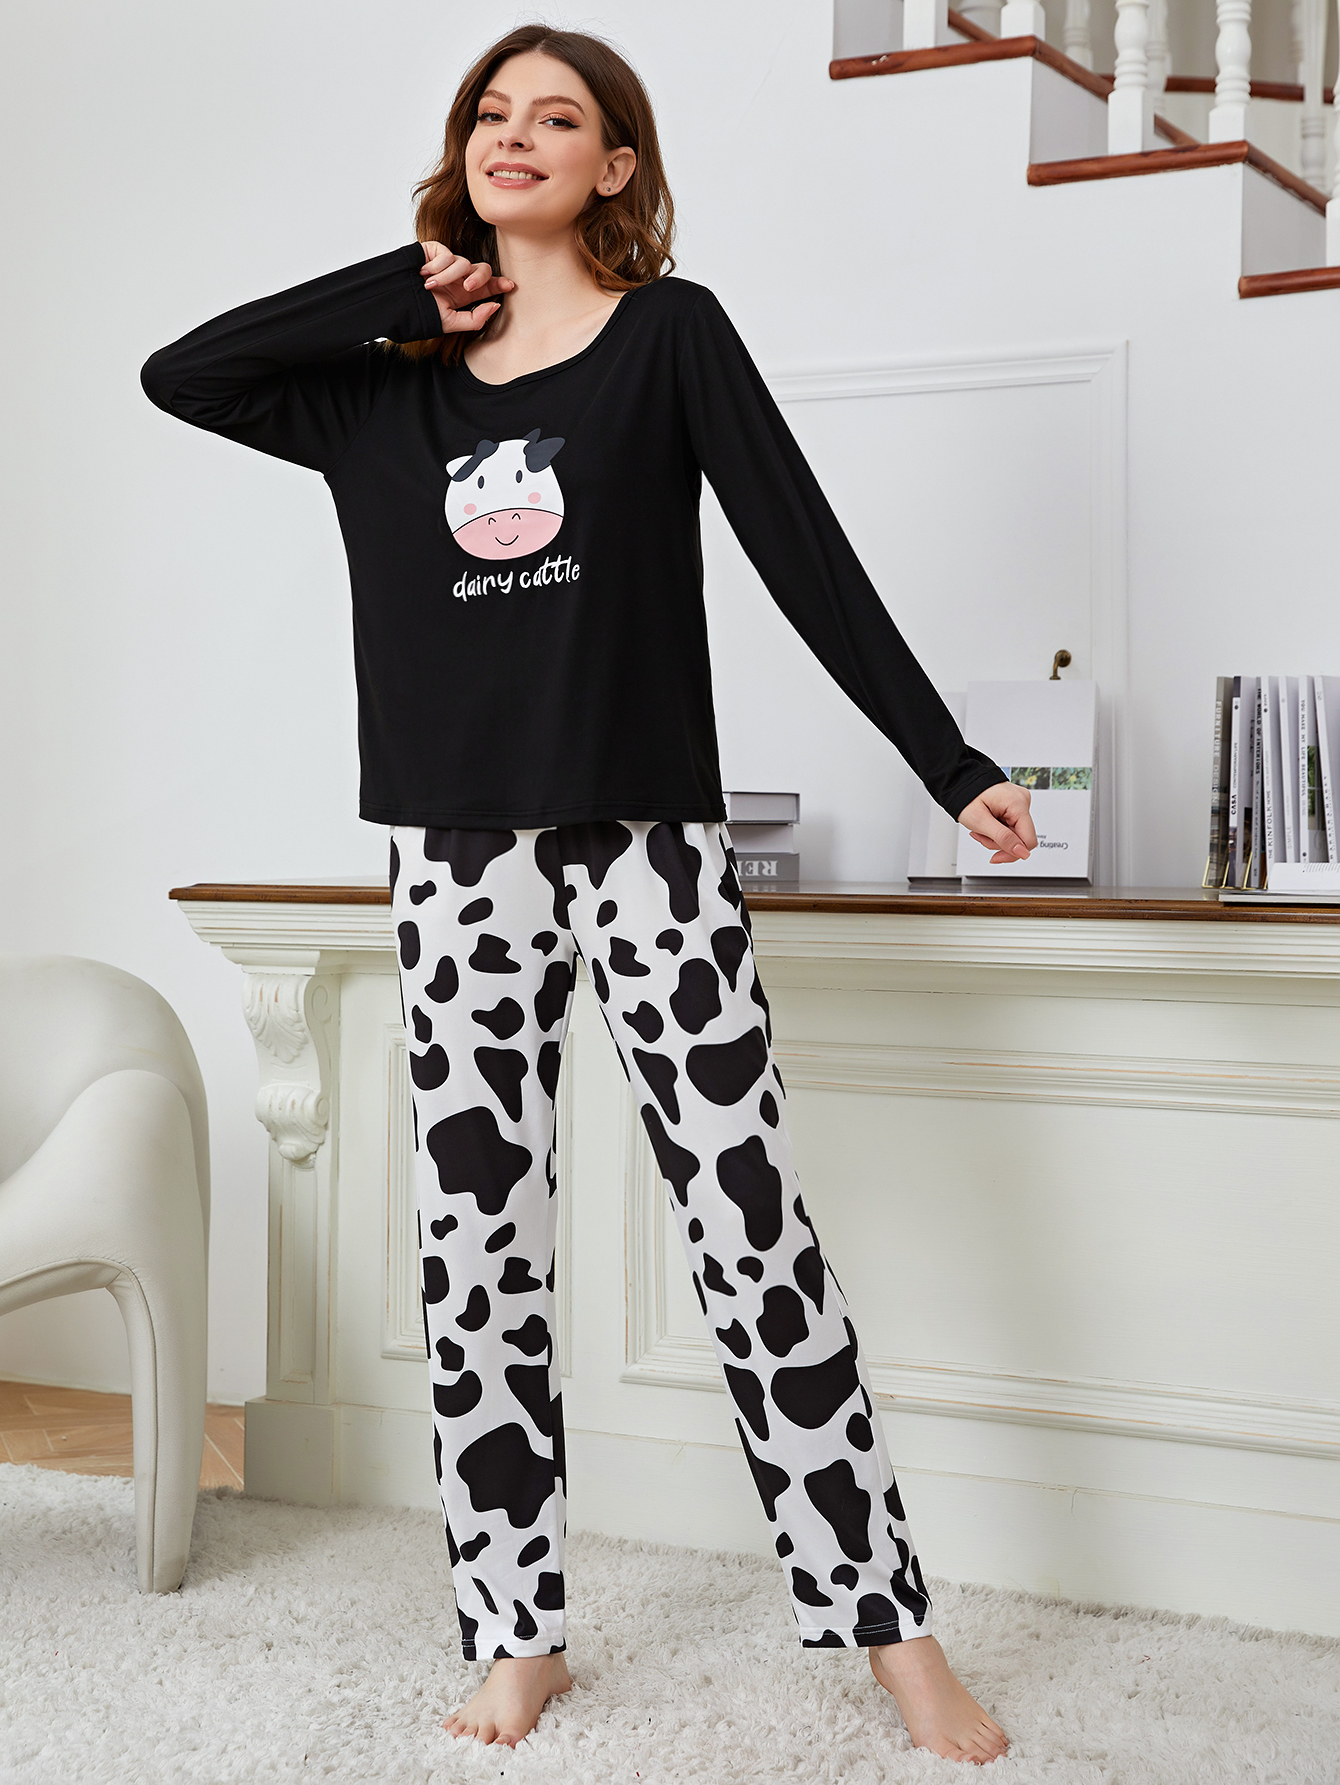 White & Black Polka Dot Tank Top Long Women's Pajama Pants Set